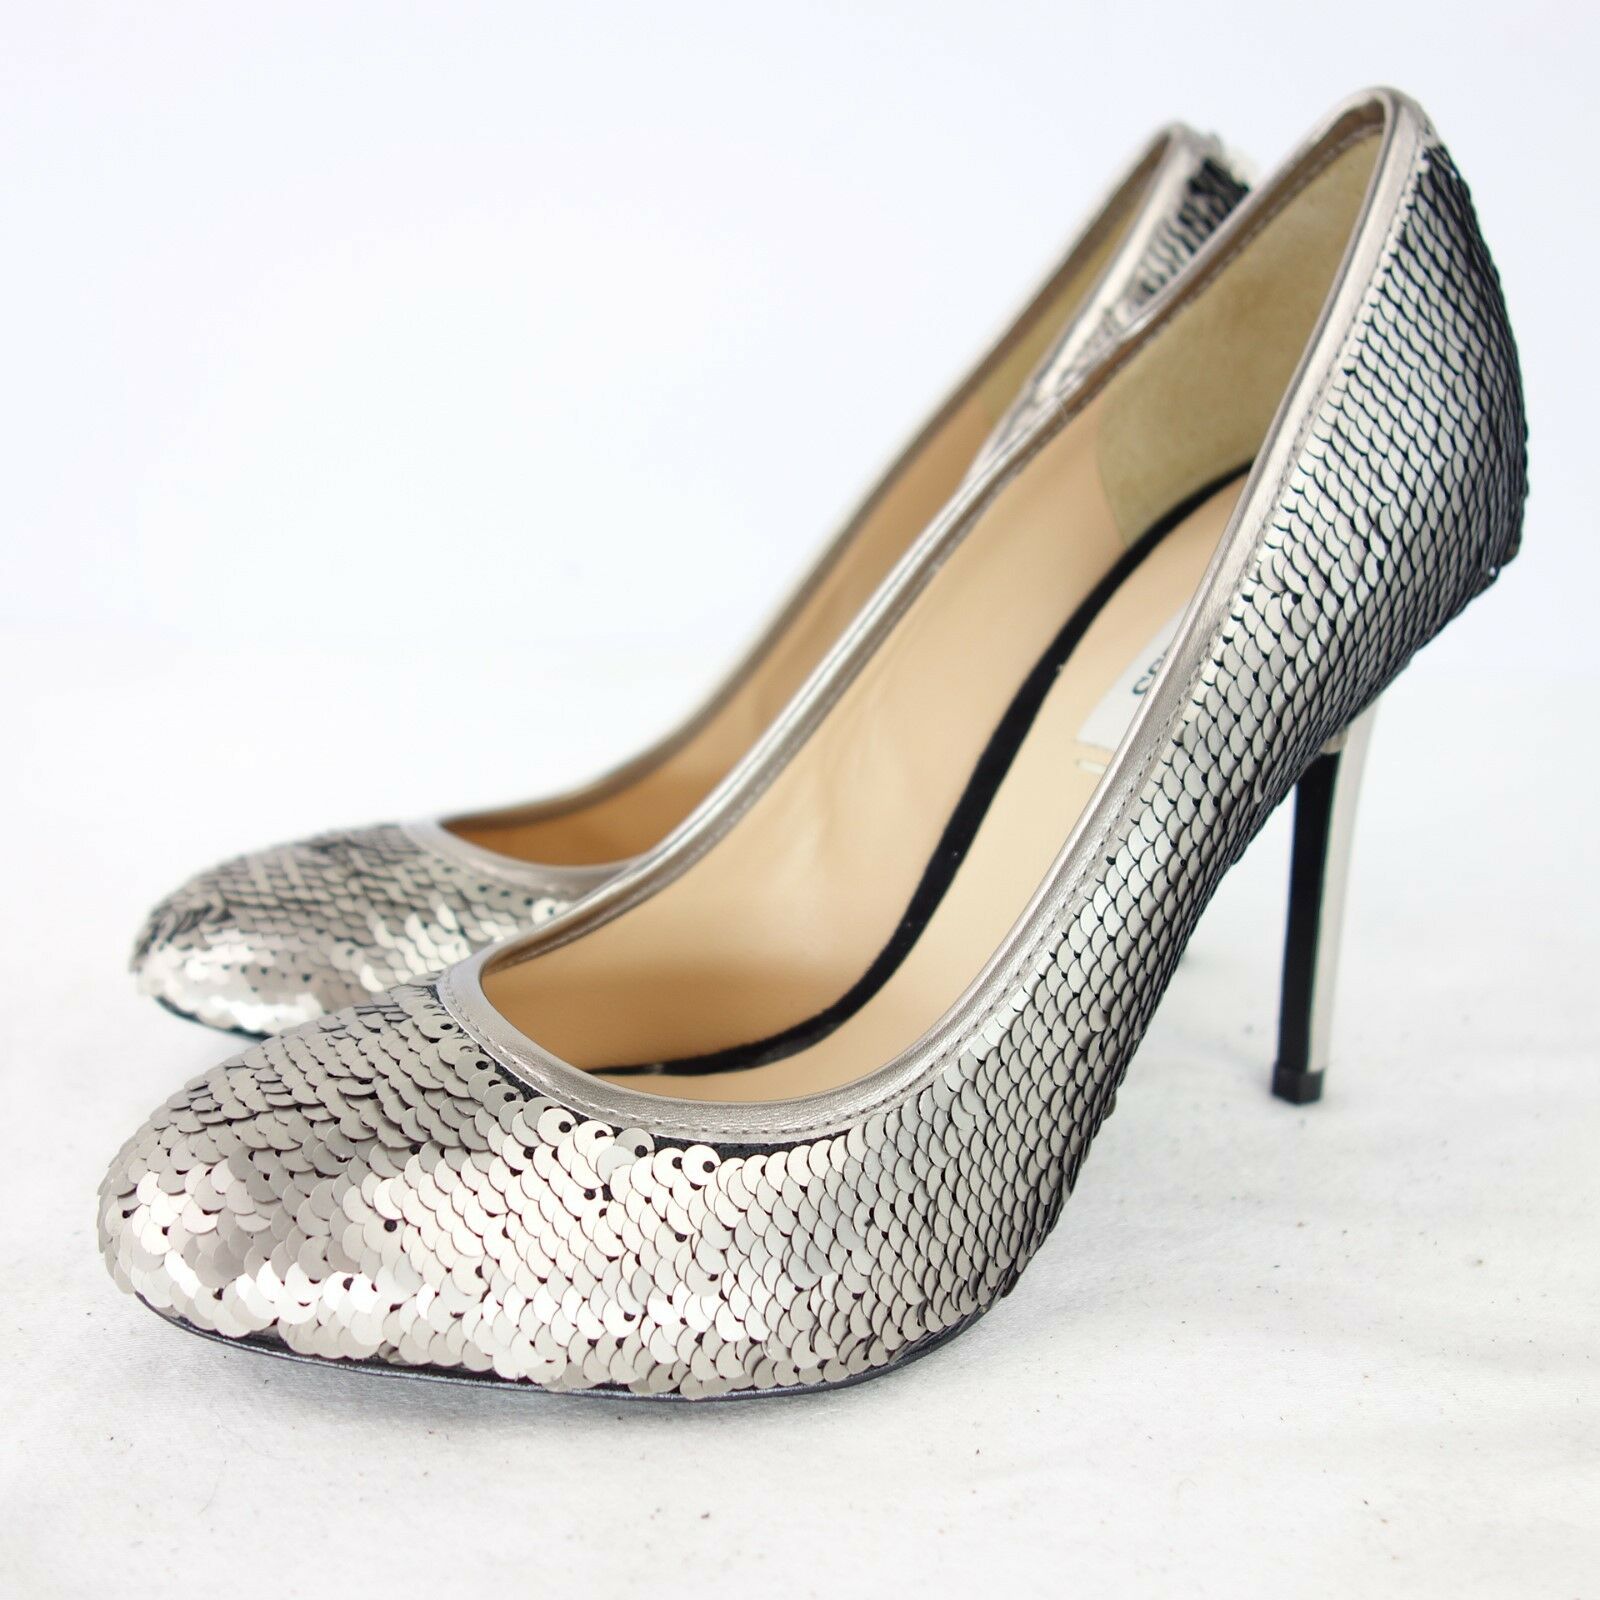 GUESS Damen Schuhe Pumps Damenschuhe Größe 39 Silber Leder Pailletten High Hells Stiletto